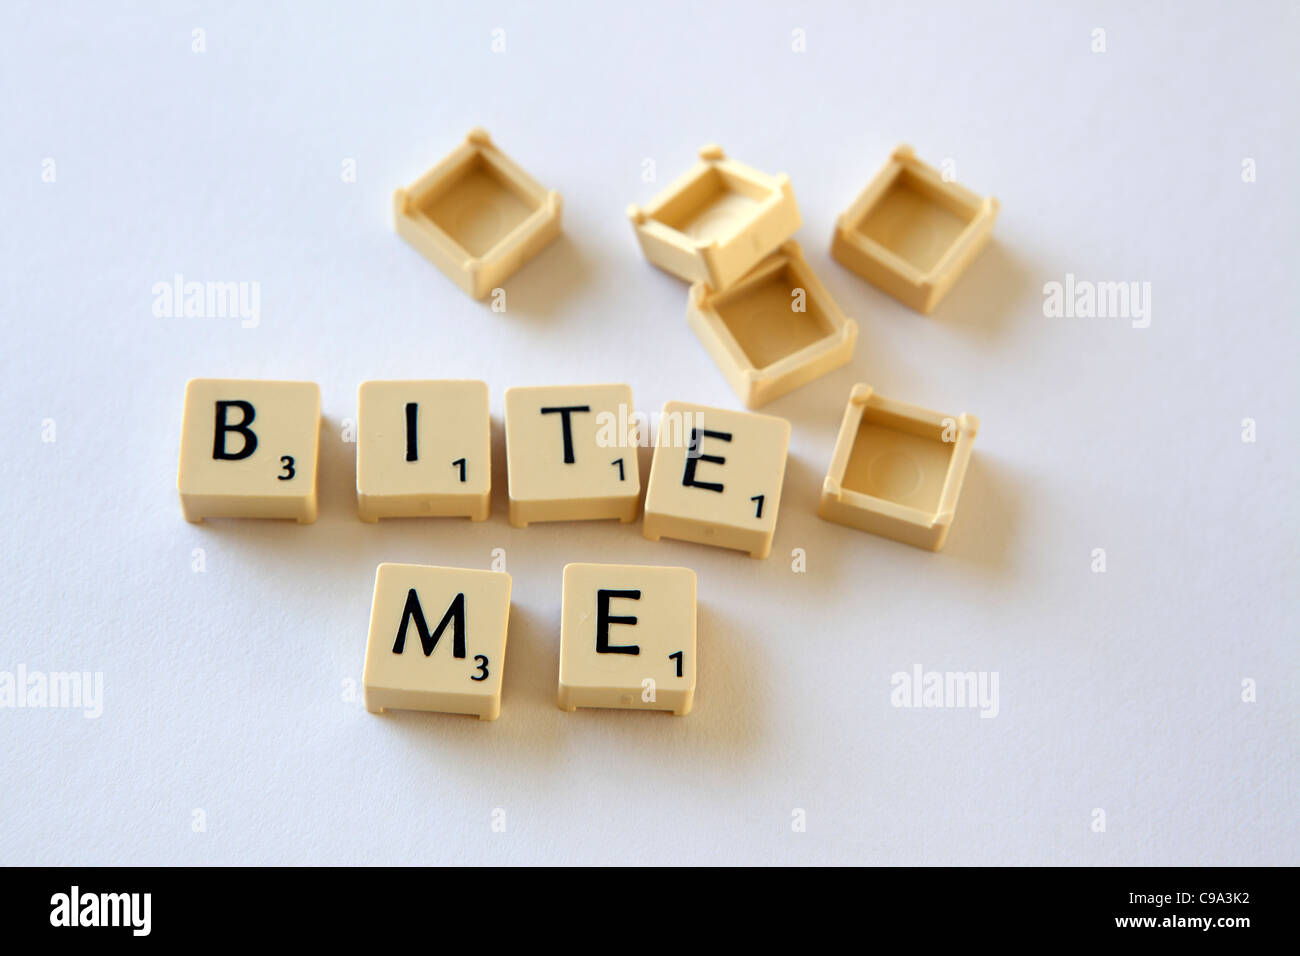 Scrabble azulejos / plazas deletrear "BITE ME", eslogan, fondo blanco studio fotografía Foto de stock